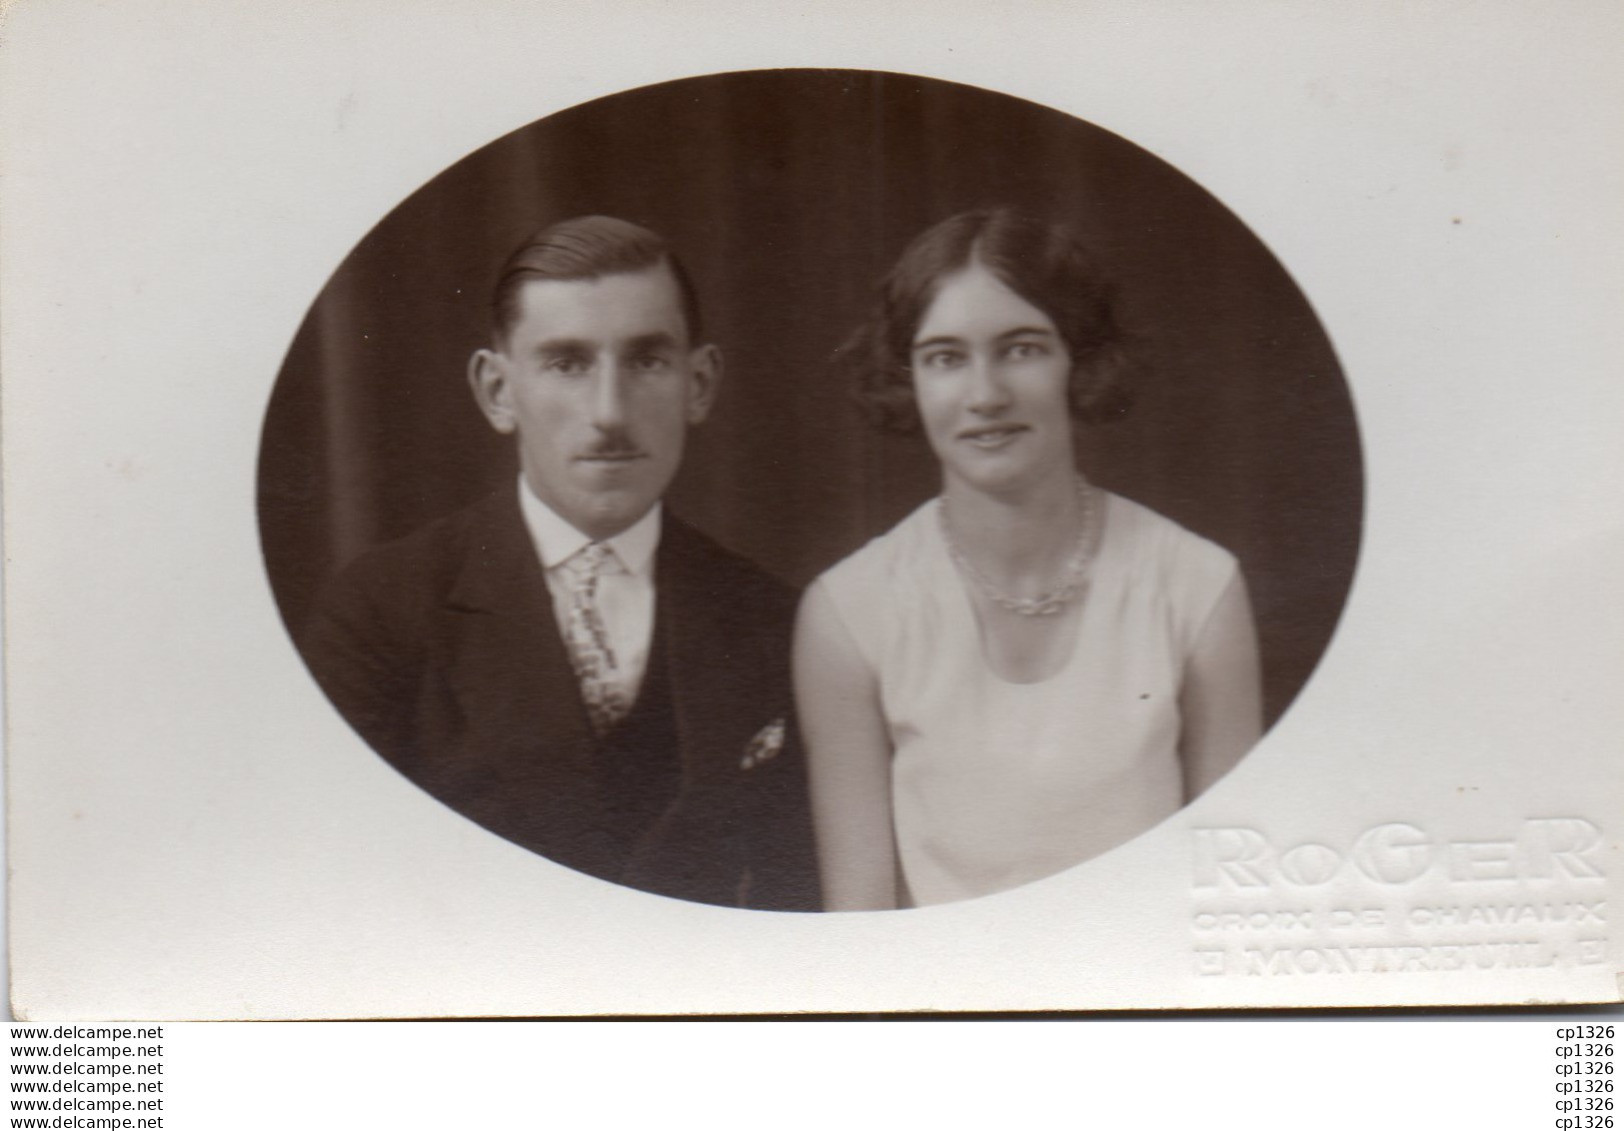 611Bce  Carte Photo Jeune Couple Jaufrey Lors De Leurs Fiançailles Avant Mariage En 1930 - Photographie